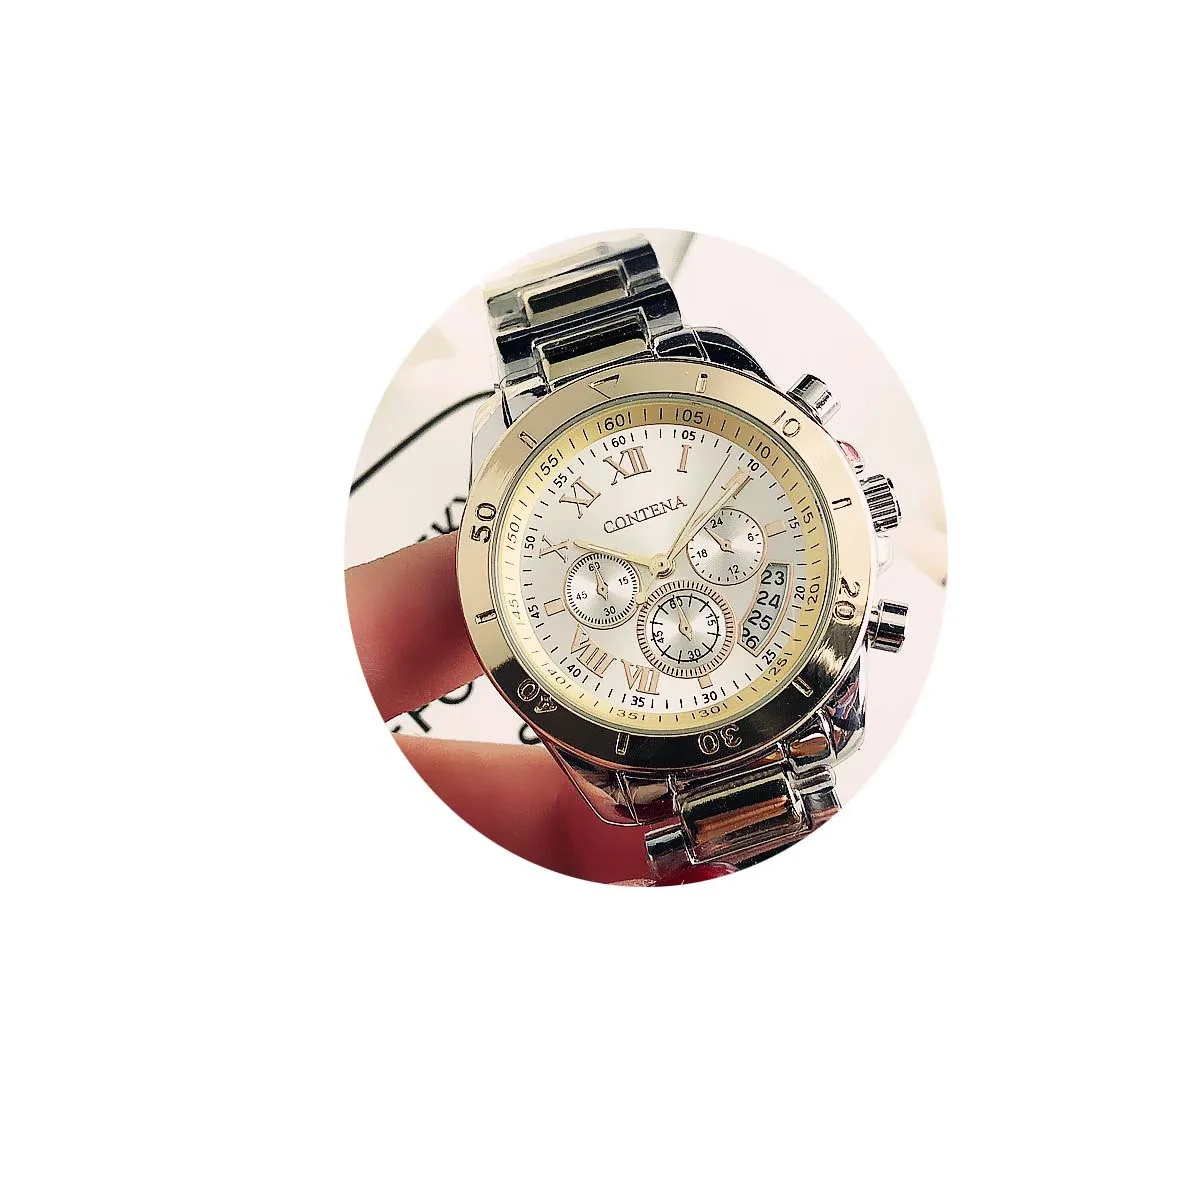 6861BZZ kuangchena новые модные трендовые кварцевые часы со стальным ремешком для мужчин и женщин прямые продажи с фабрики